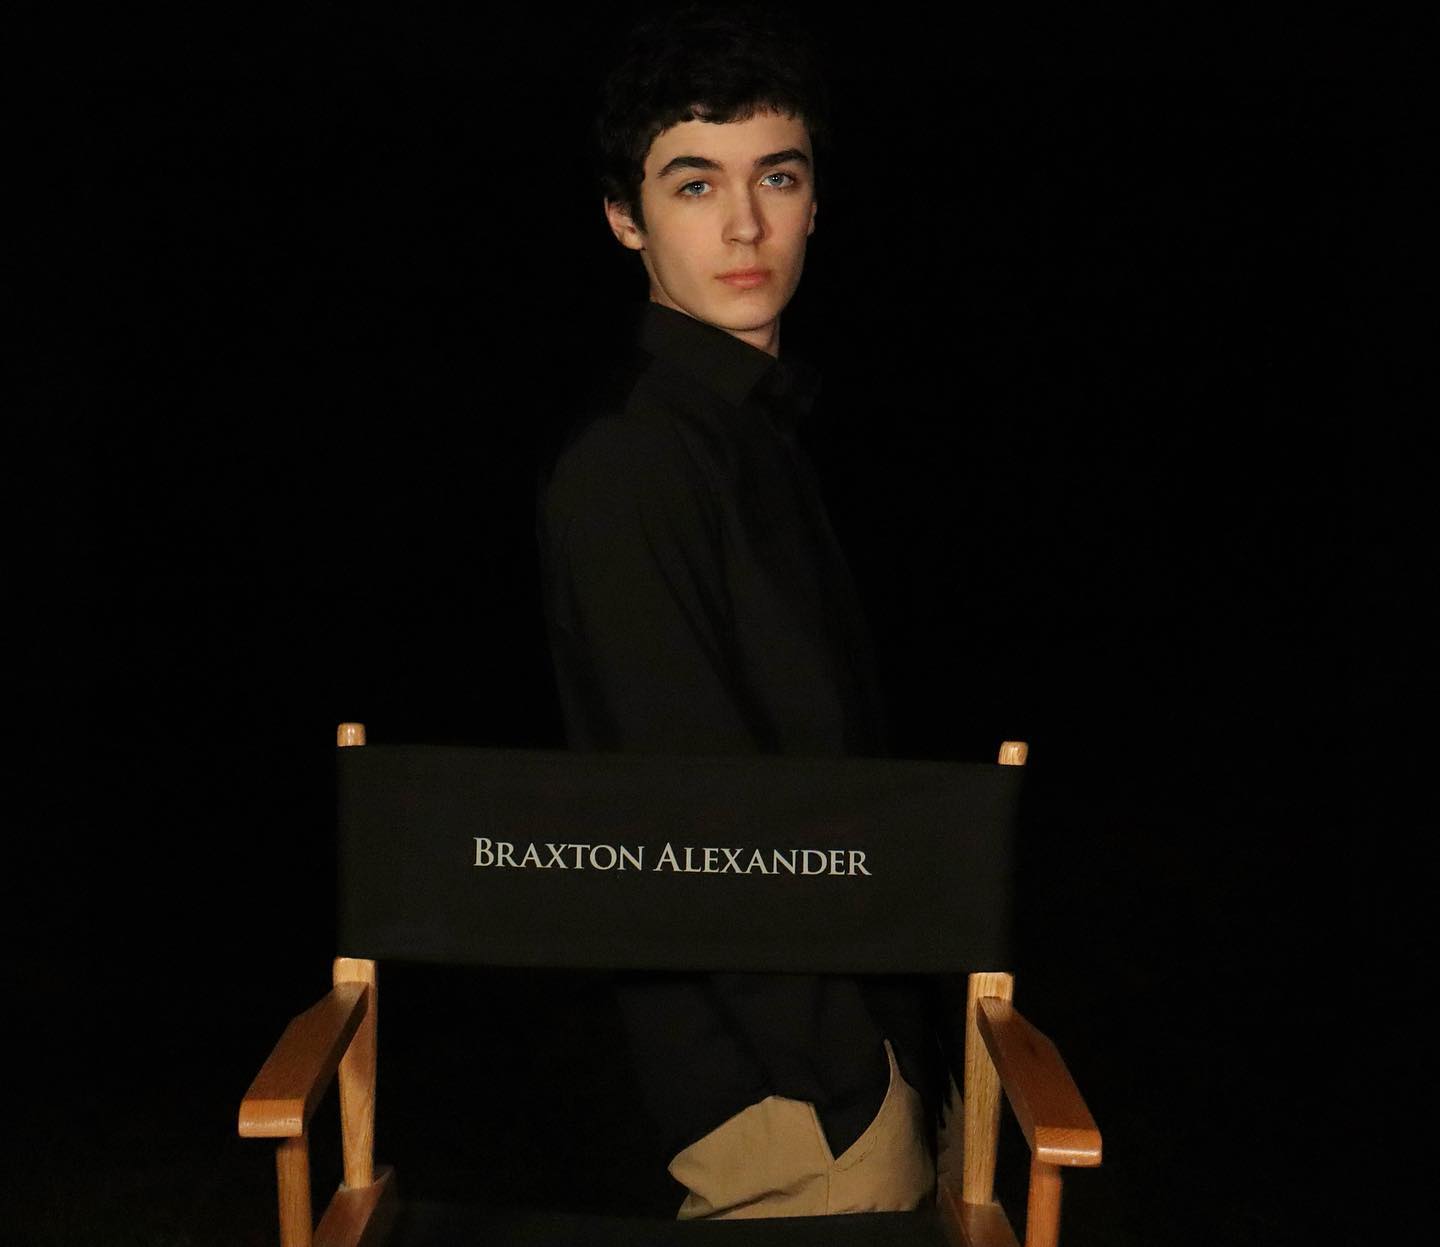 General photo of Braxton Alexander